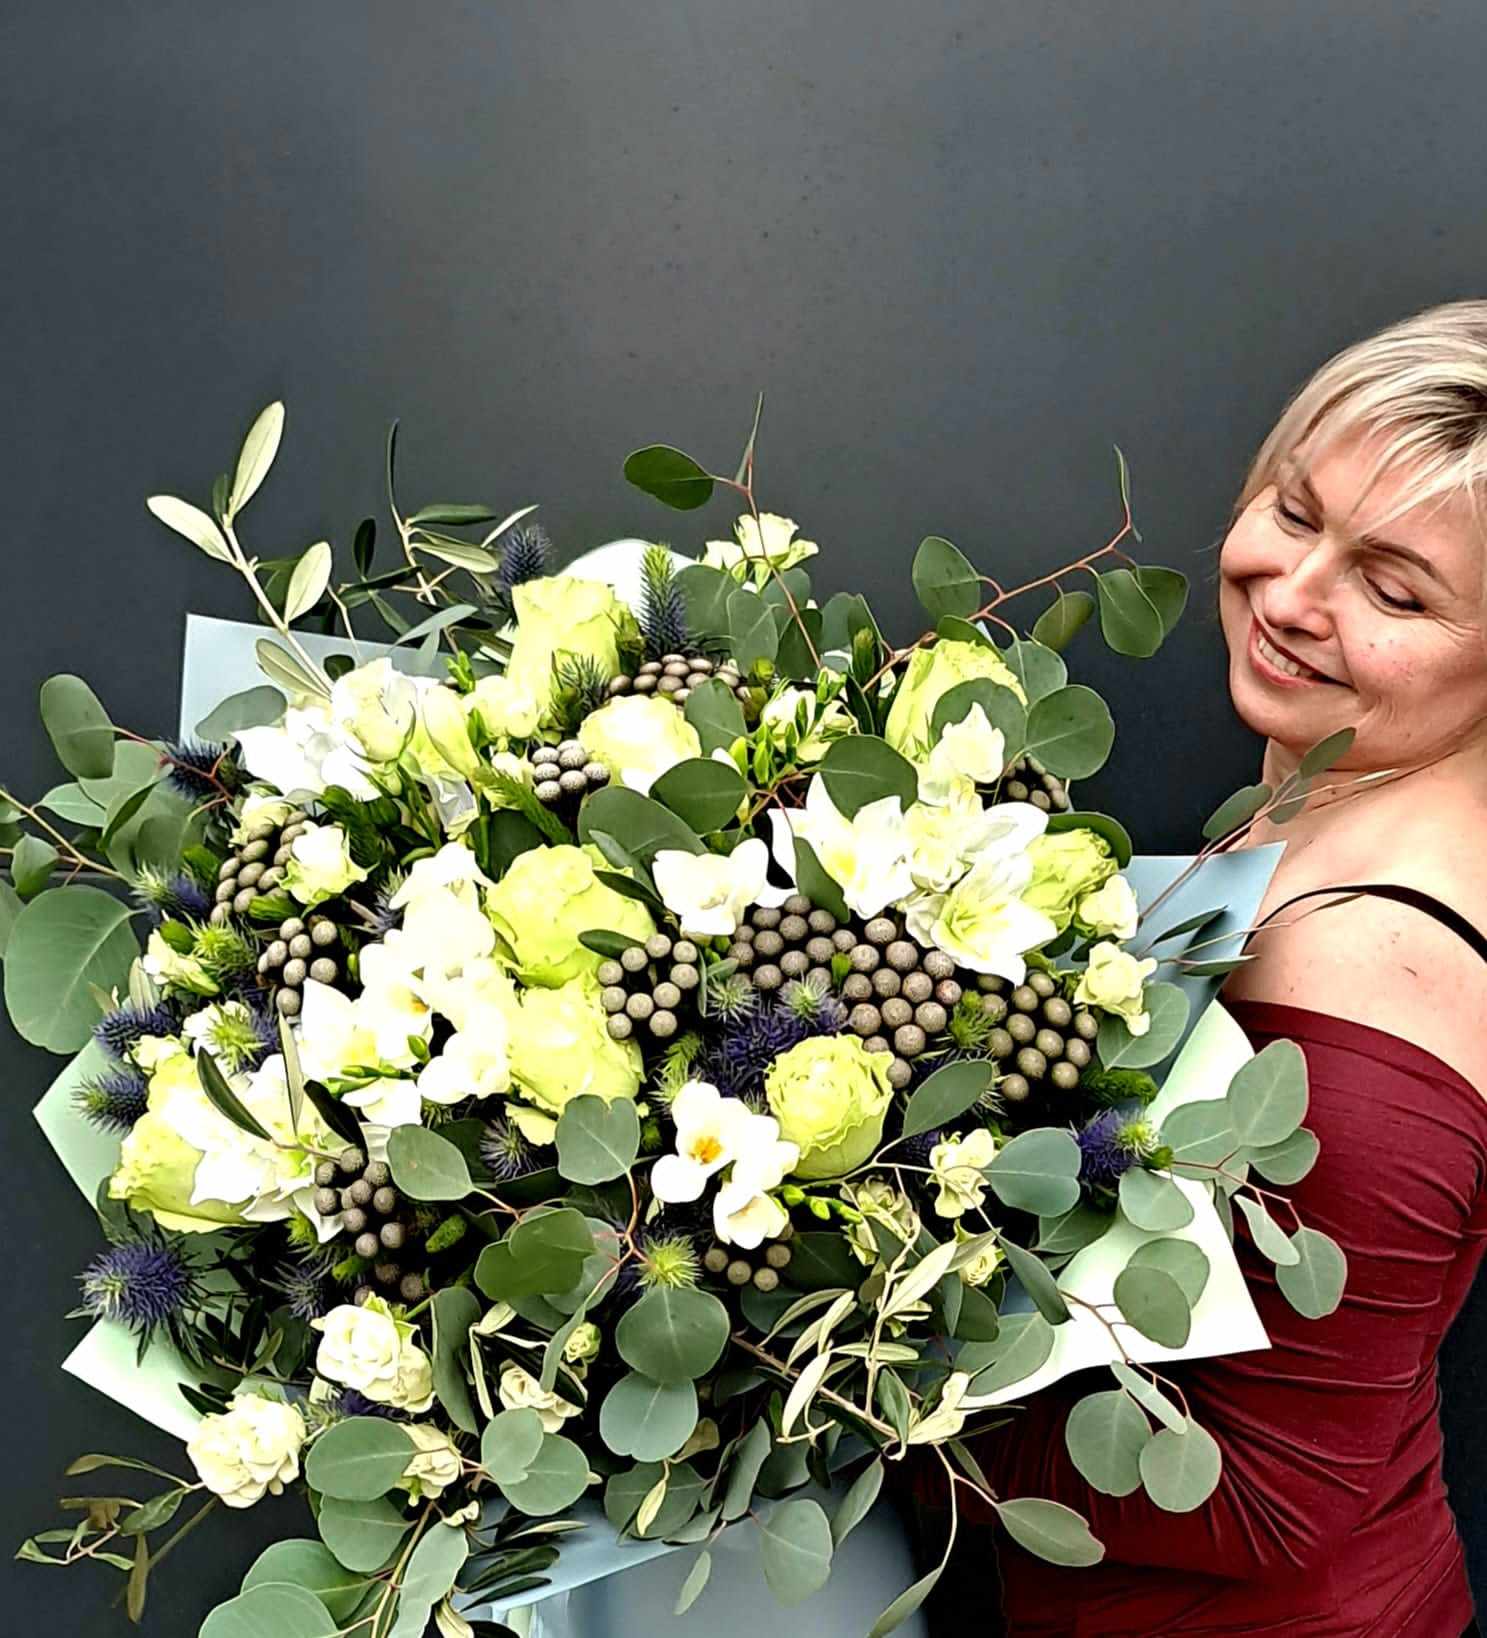 Gratulační kytice k narozeninám, výročí, promoci Opava, Krnov